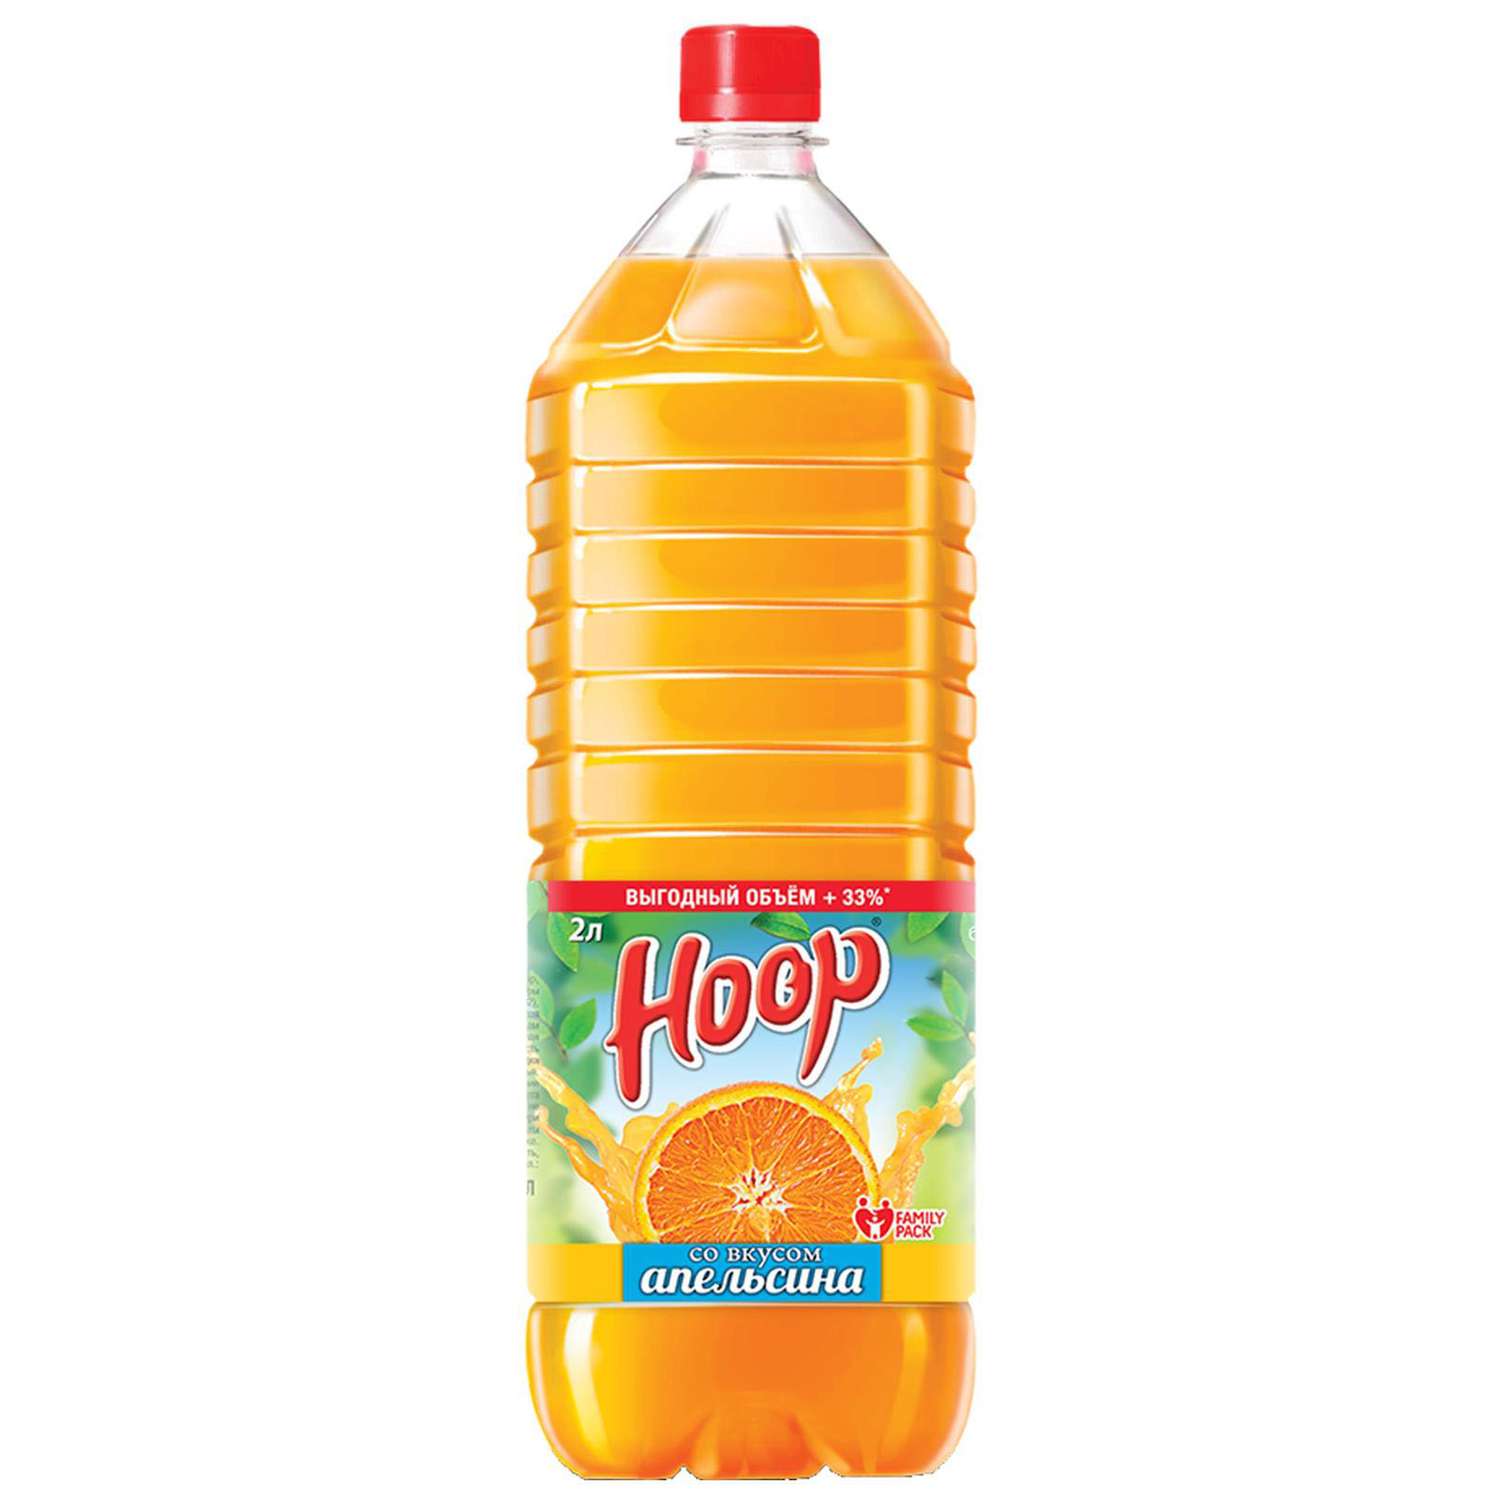 Hoop напиток. Нап.ПЭТ Hoop апельсин 2л*6, шт. Напиток Hoop апельсин. Напиток сокосодержащий Hoop 0,5. Напиток б/а негаз. Hoop апельсин 2л ПЭТ.